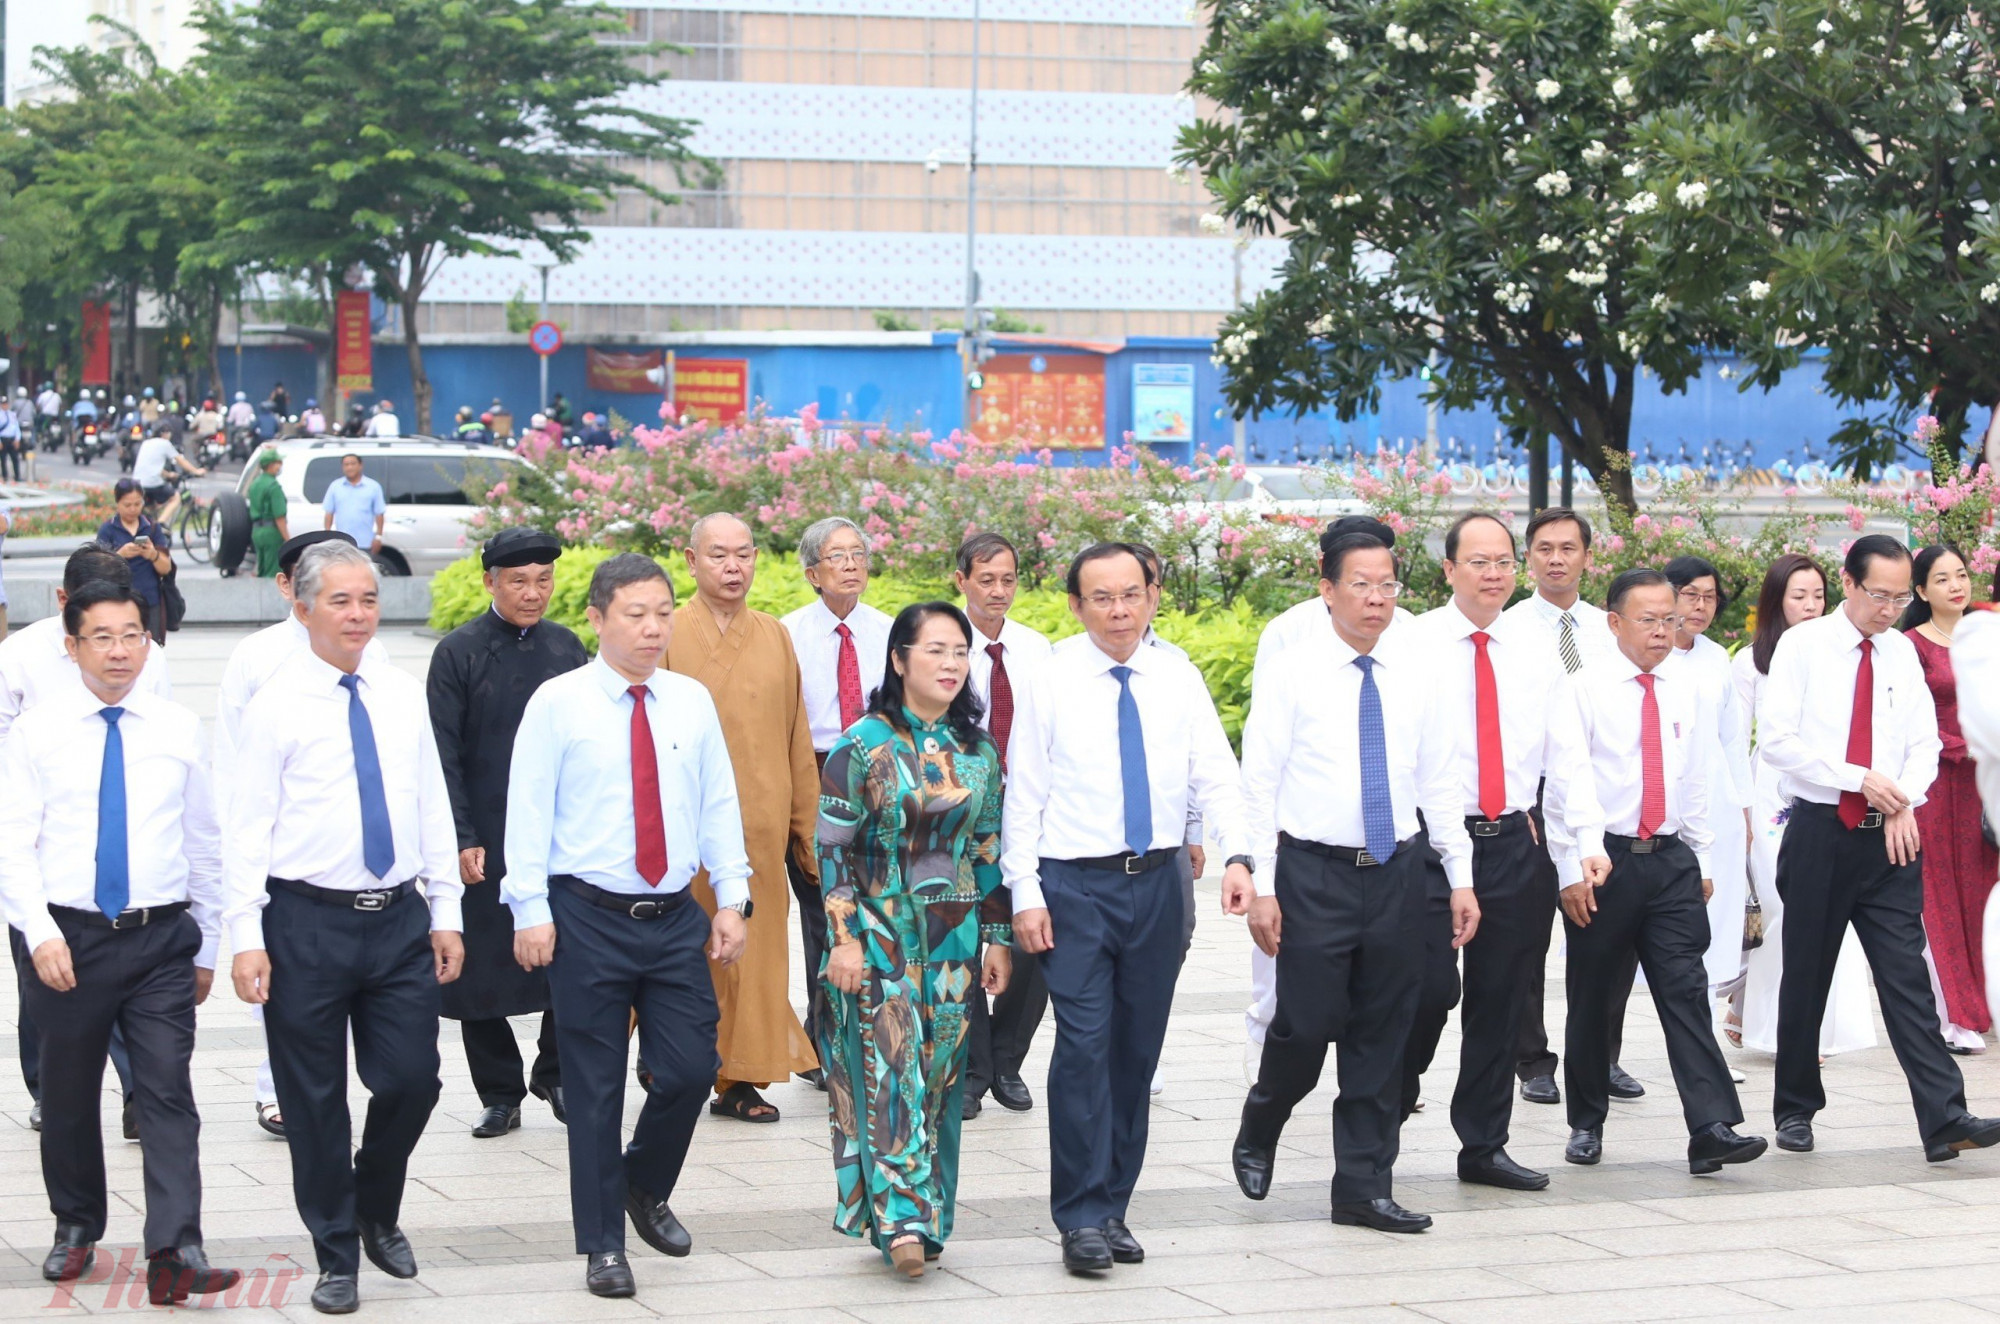 Đoàn đại biểu do Bí thư Thành ủy TPHCM Nguyễn Văn Nên làm trưởng đoàn, đã đến dâng hương, dâng hoa tưởng niệm Chủ tịch Hồ Chí Minh 